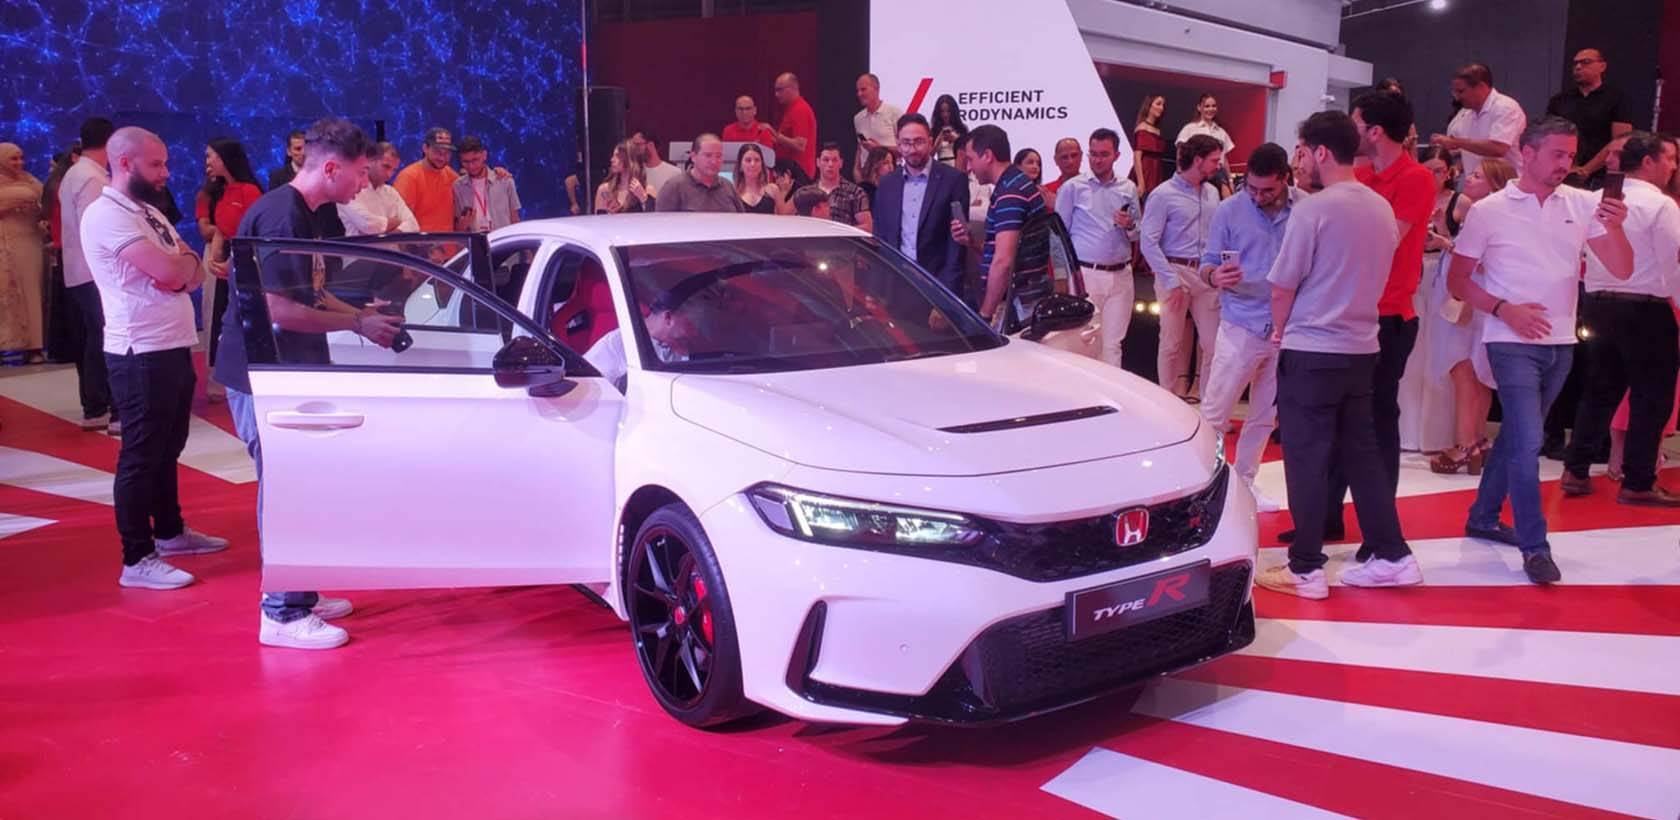 Honda Tunisie dévoile ses nouveaux modèles lors d’une soirée mémorable